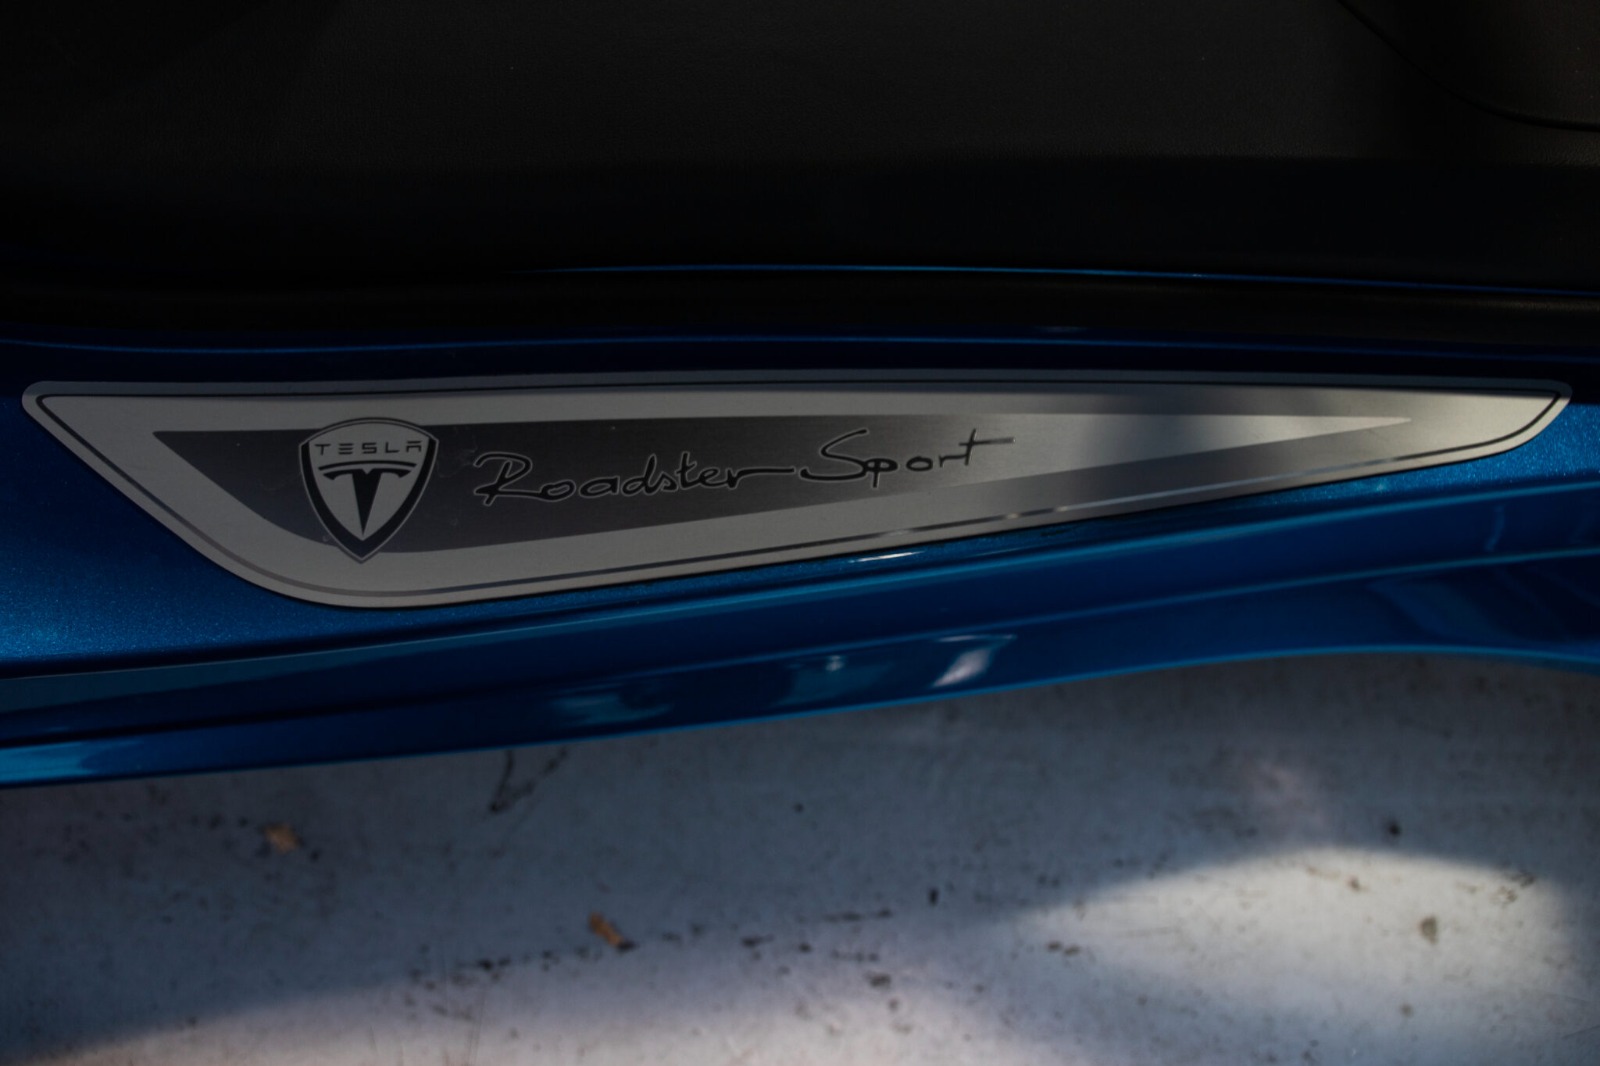 2010 Tesla Roadster 2.5 Sport full